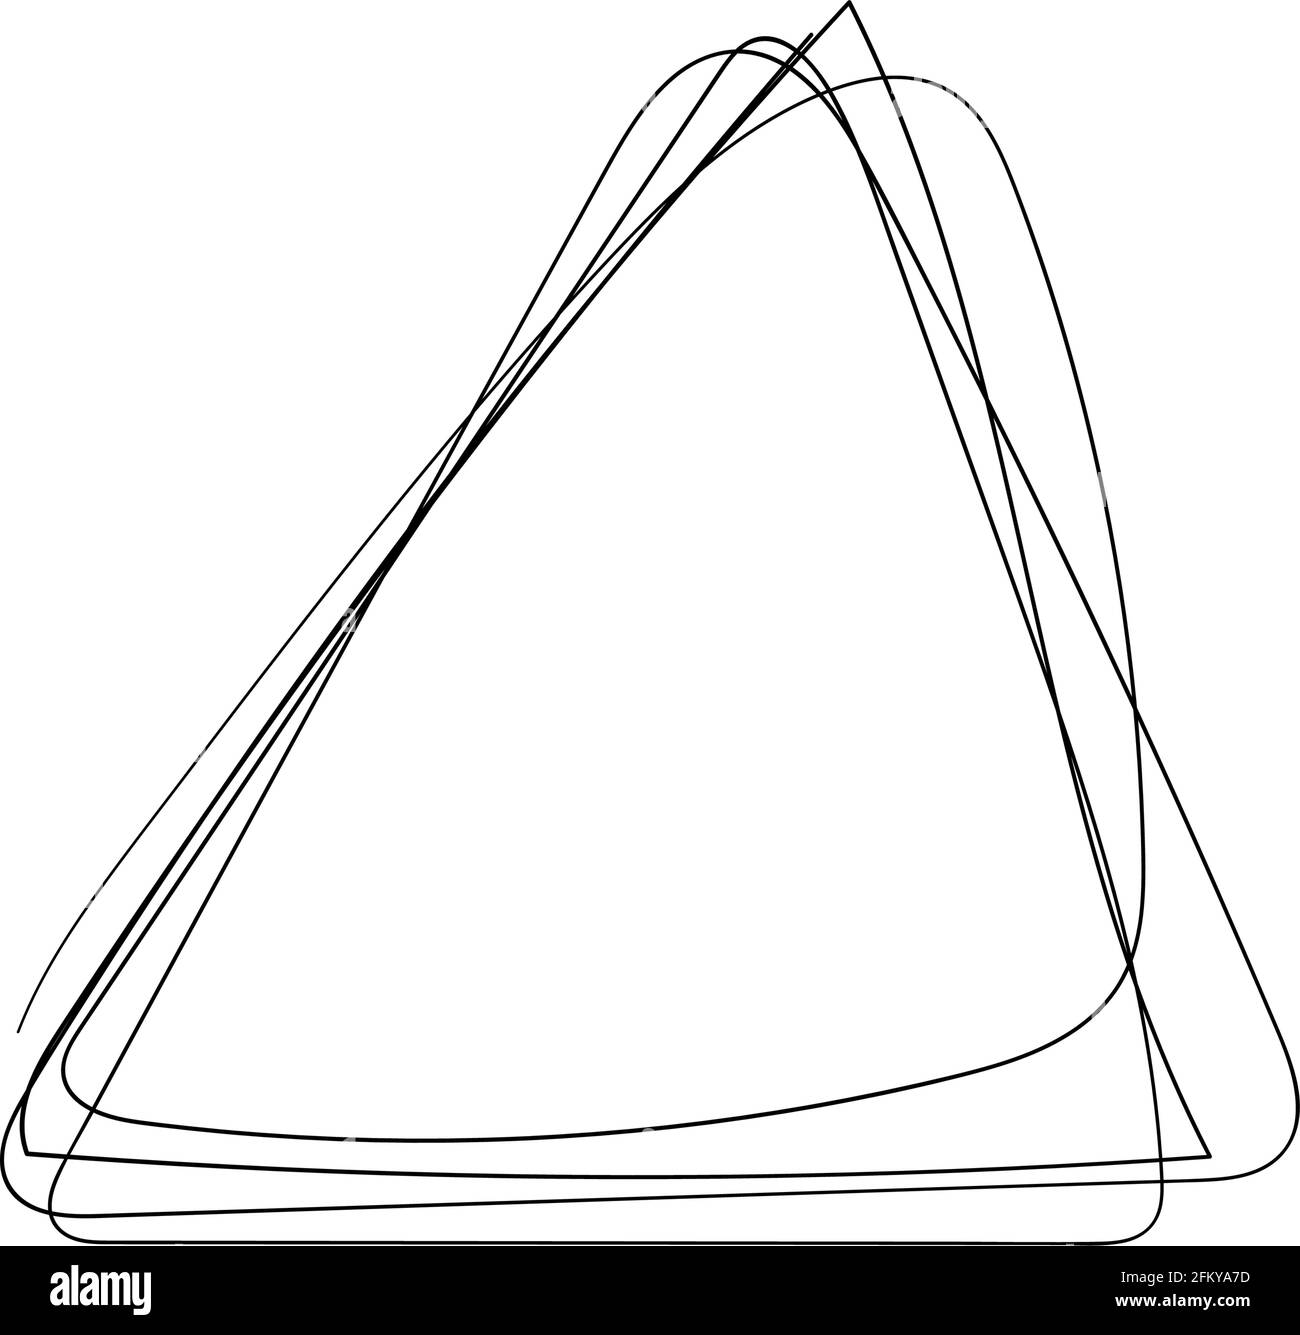 triangolo per scarabocchiare disegnato a mano. cornice triangolare astratta  in stile dodles. Elemento di disegno lateen. Linea continua. Illustrazione  vettoriale isolata Immagine e Vettoriale - Alamy